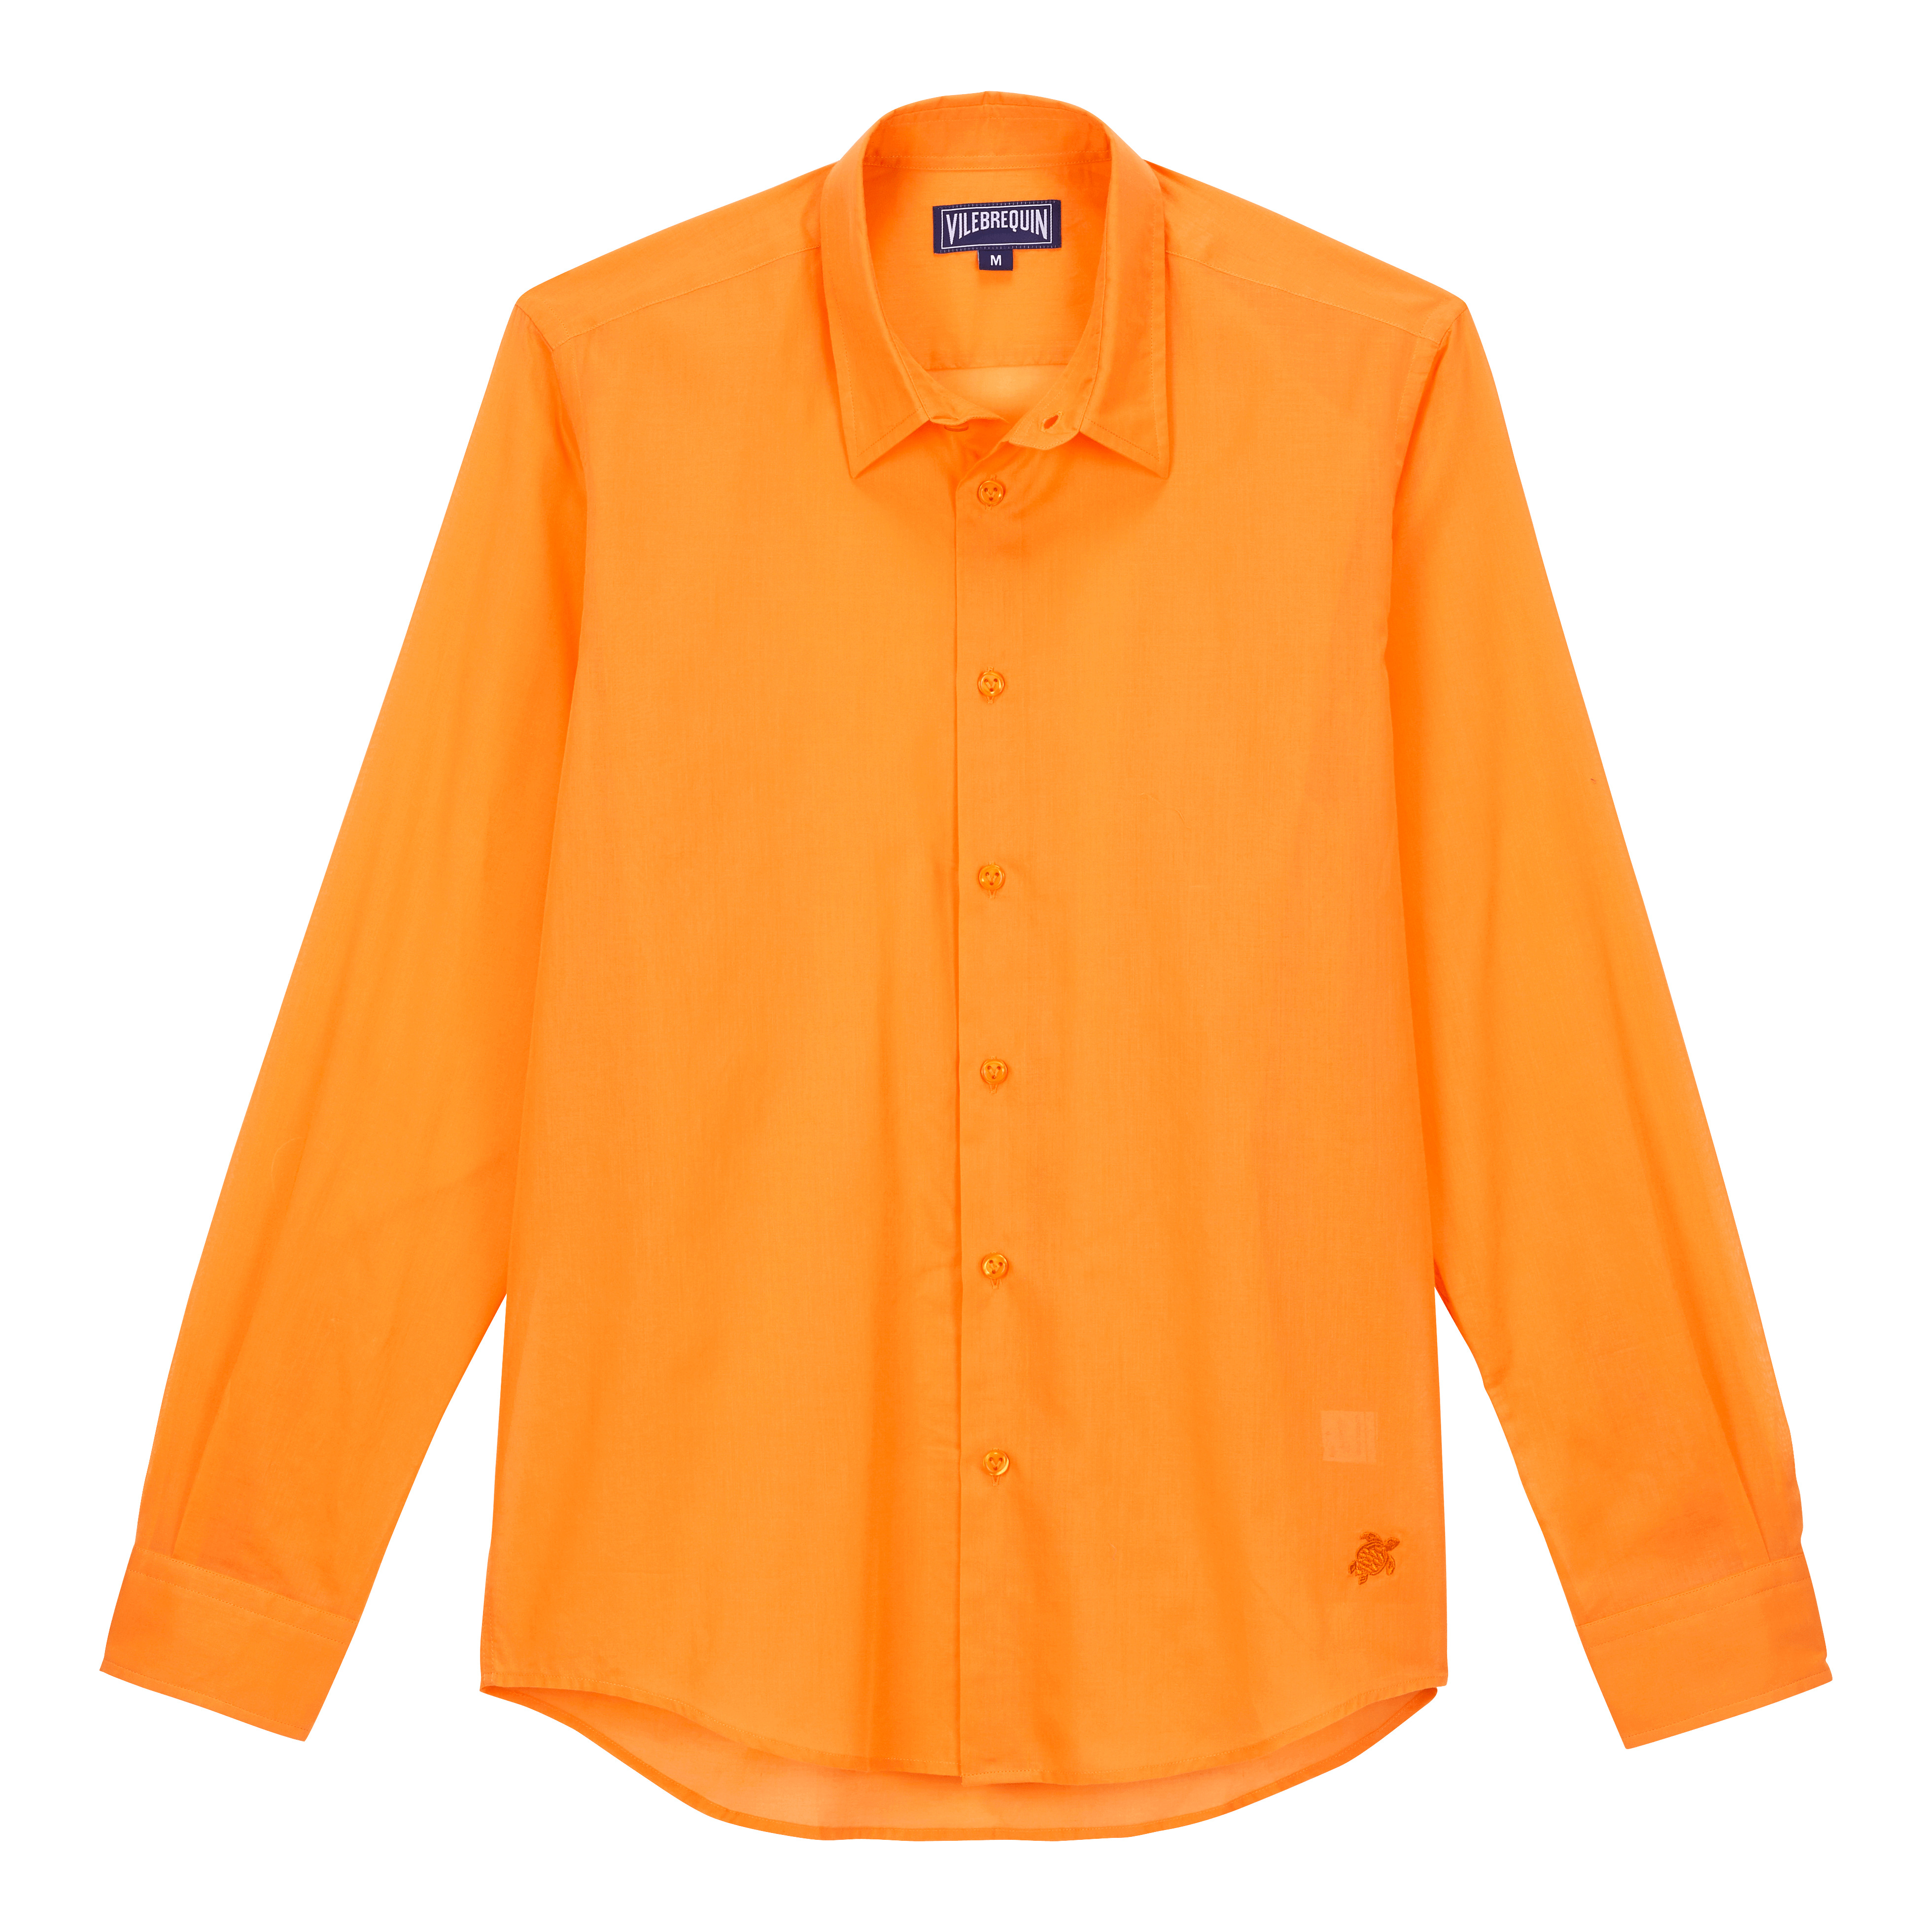 Unisex Cotton Voile Lightweight Shirt Solid - 1